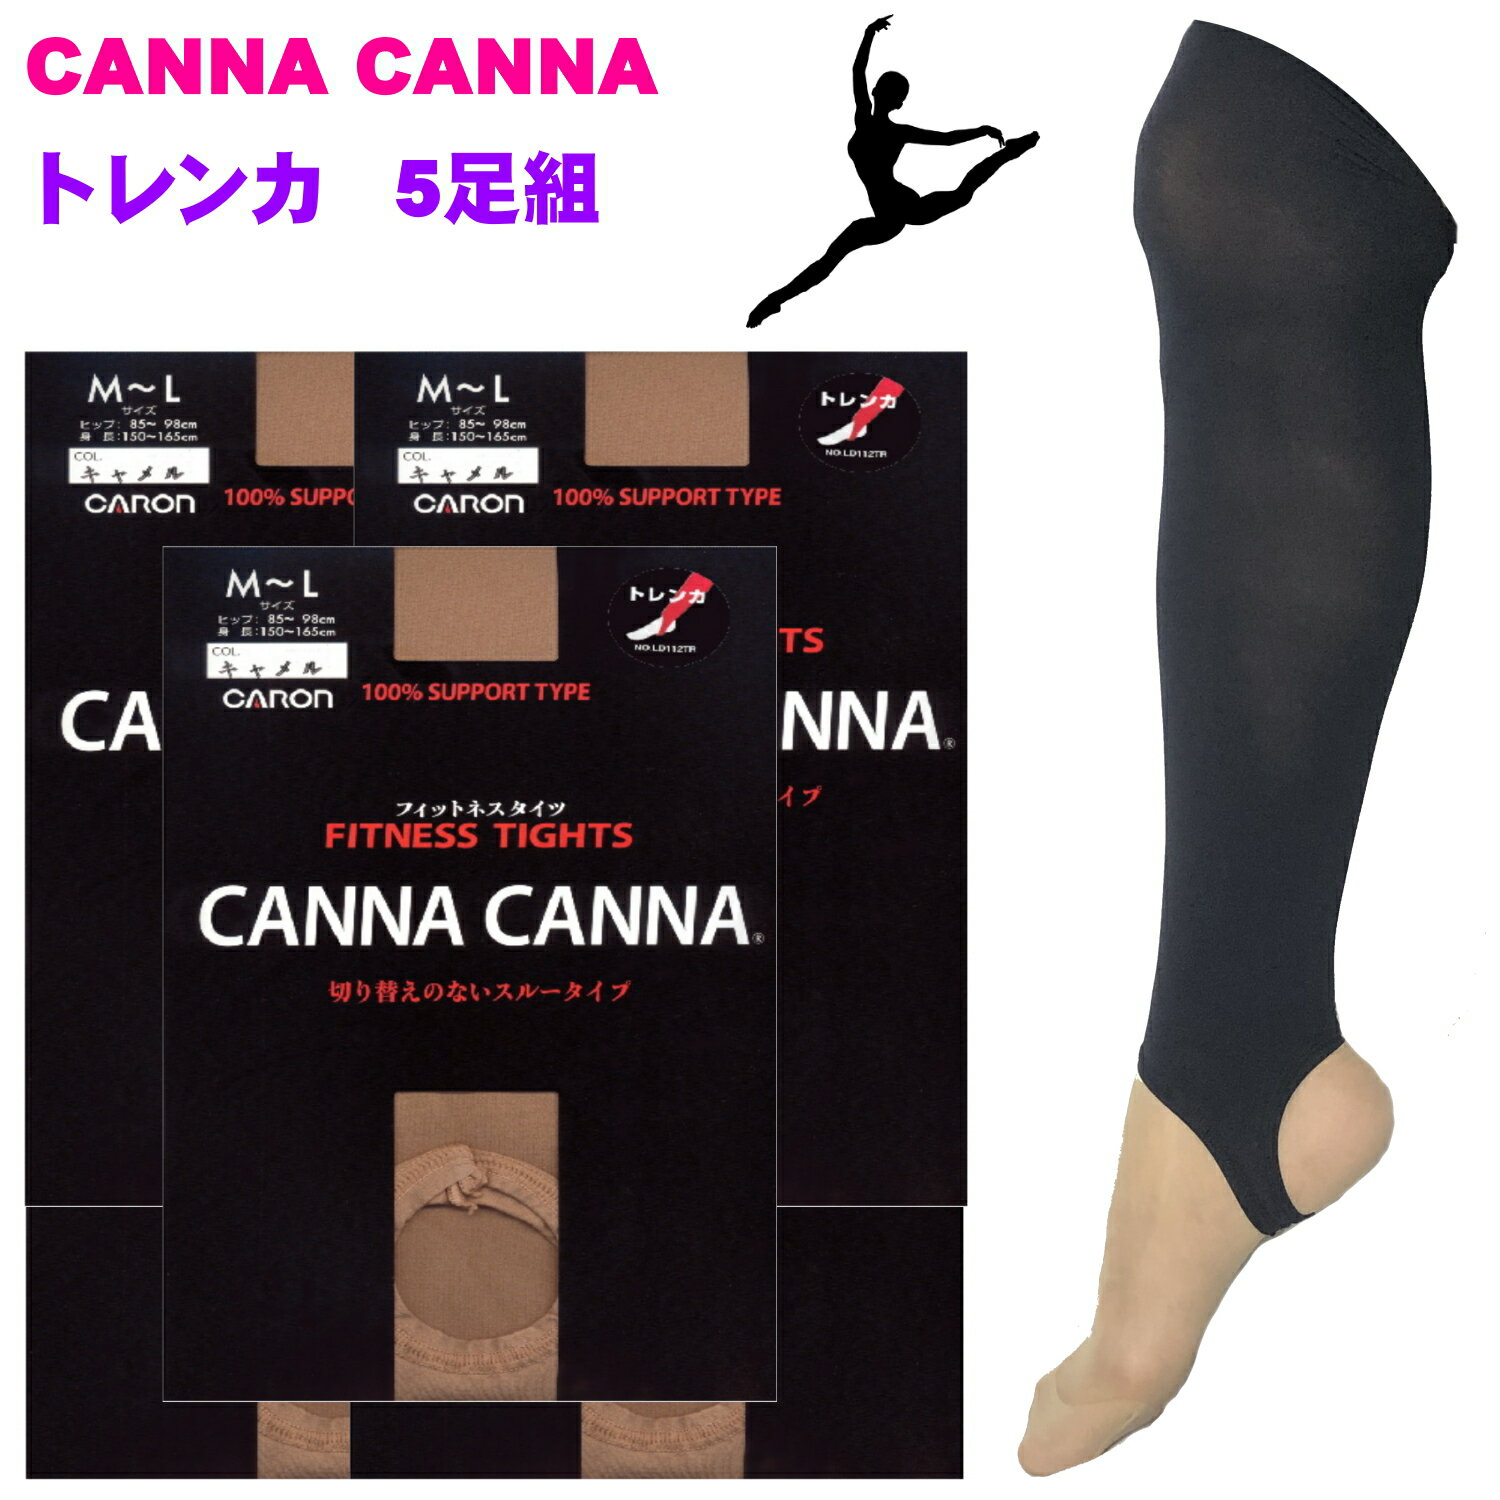 【ポイント5倍】CANNA CANNAカンナカンナ フィットネストレンカ 5足組 ダンス レオタードに最適 フィギアスケート フィット 伸びが良い【日本製】